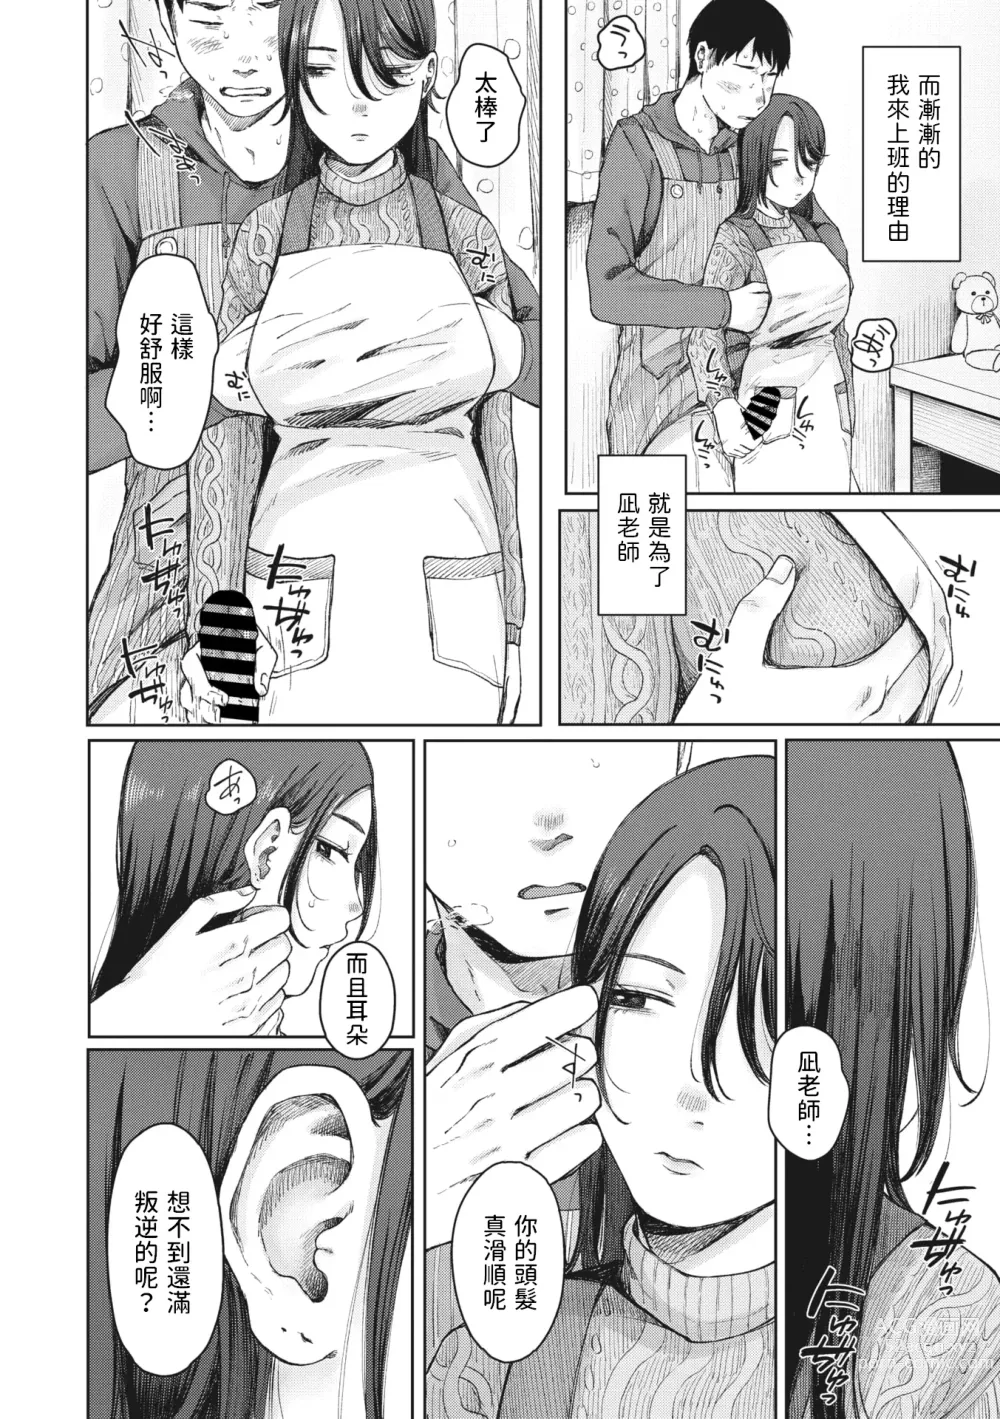 Page 12 of manga Tasukete Nagi  Sensei!